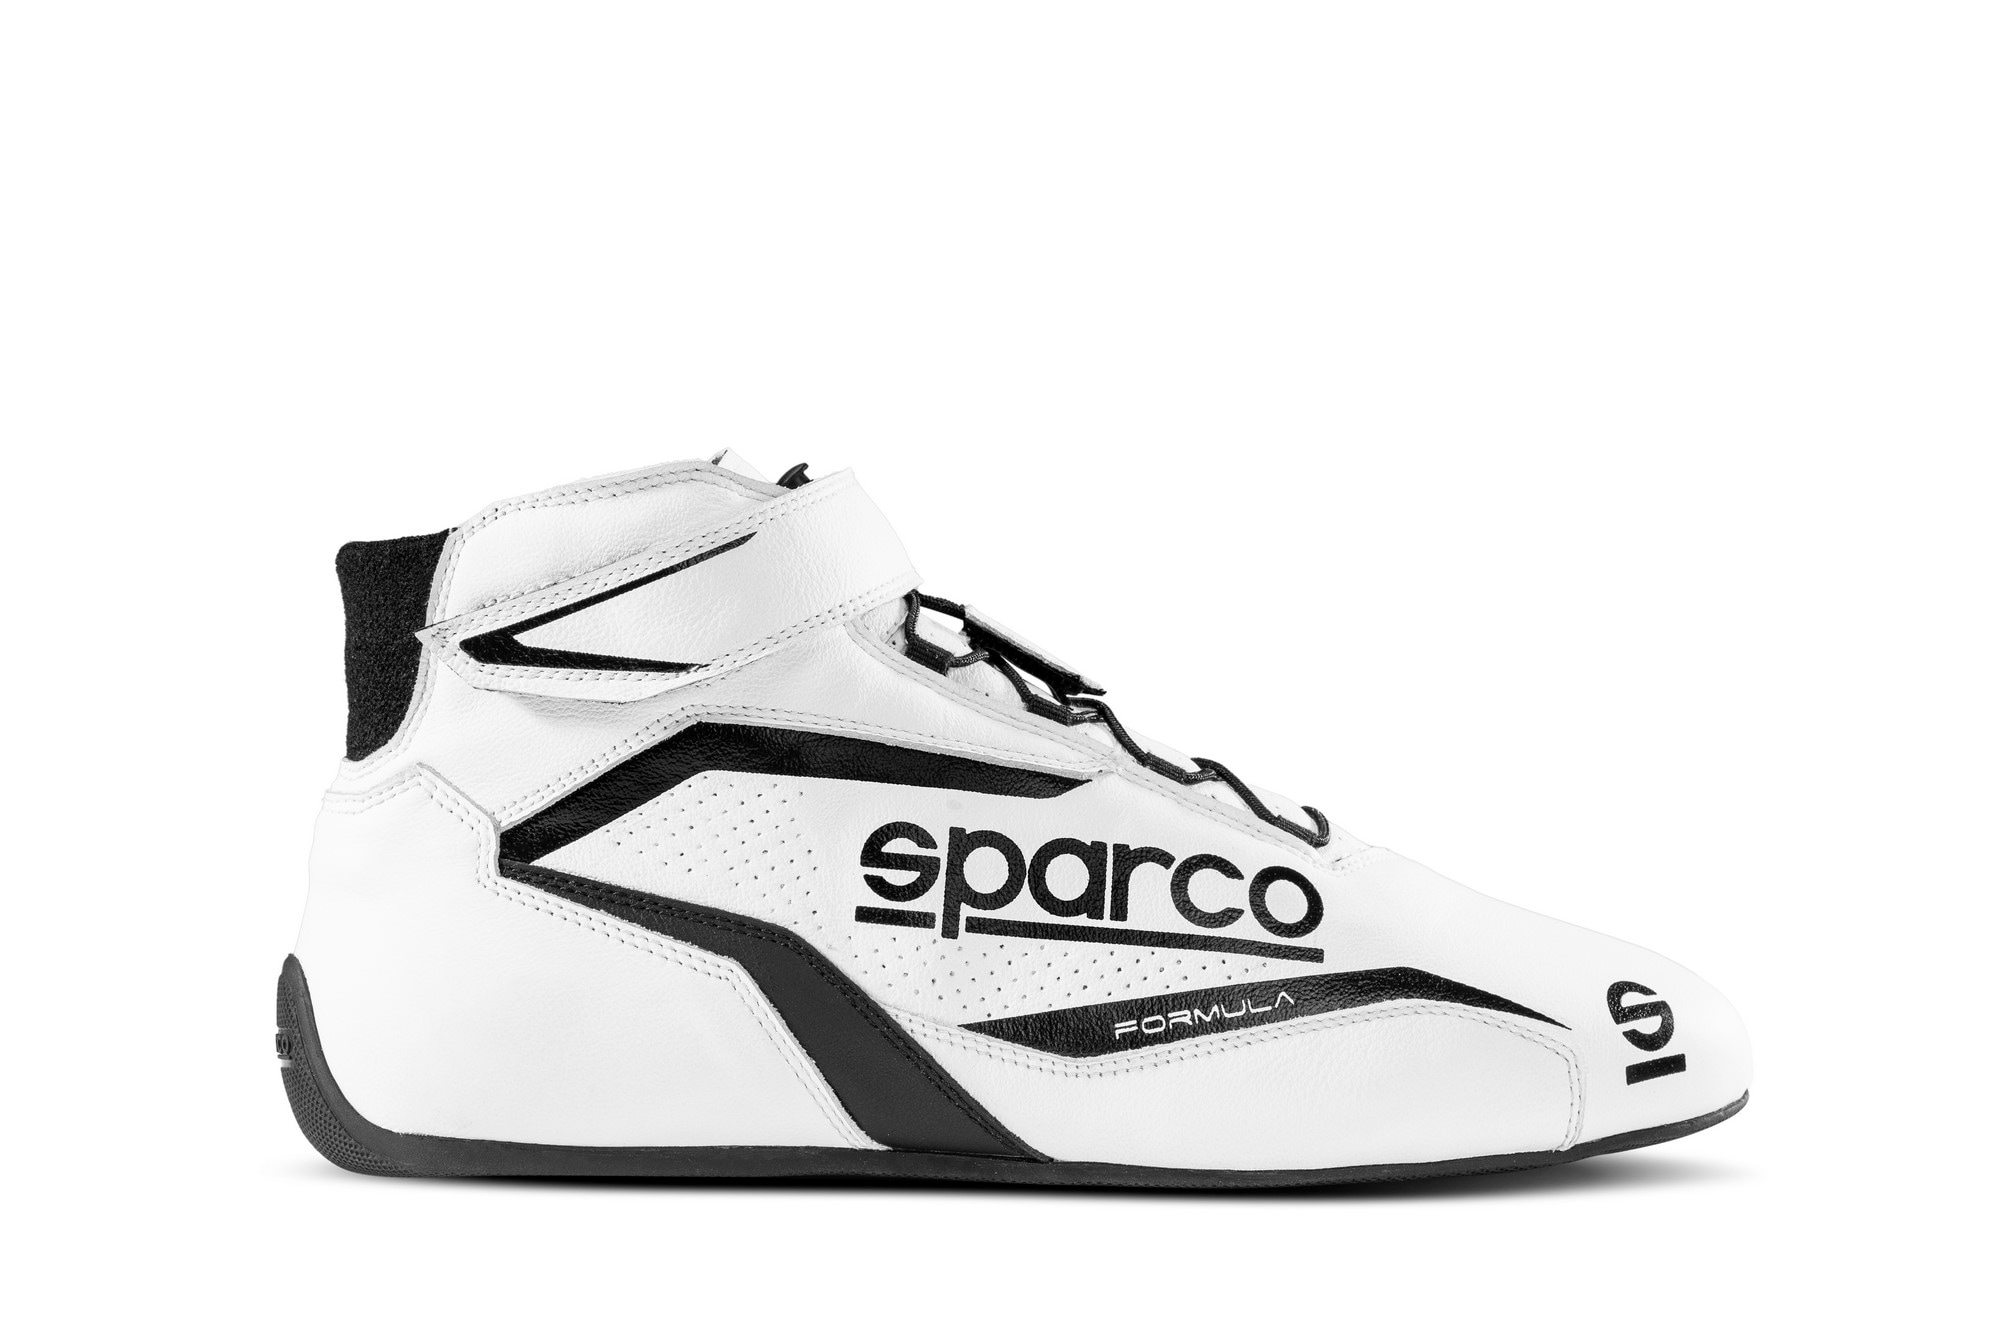 Sko Sparco Formula Hvid